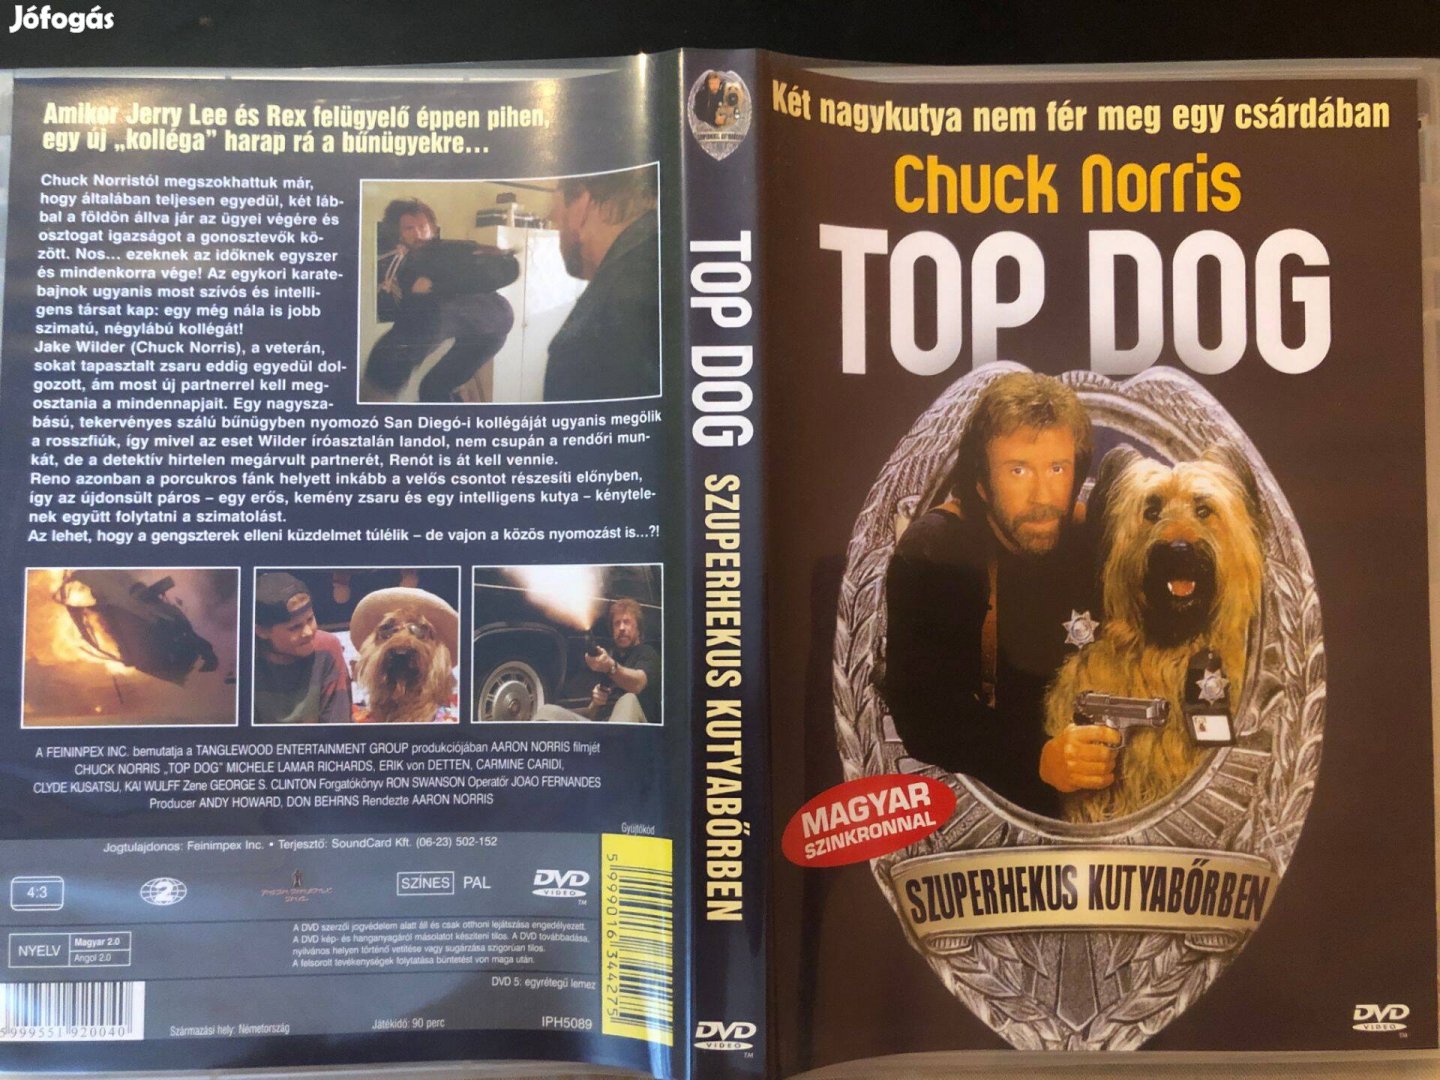 Top Dog Szuperhekus kutyabőrben (karcmentes, Chuck Norris) DVD